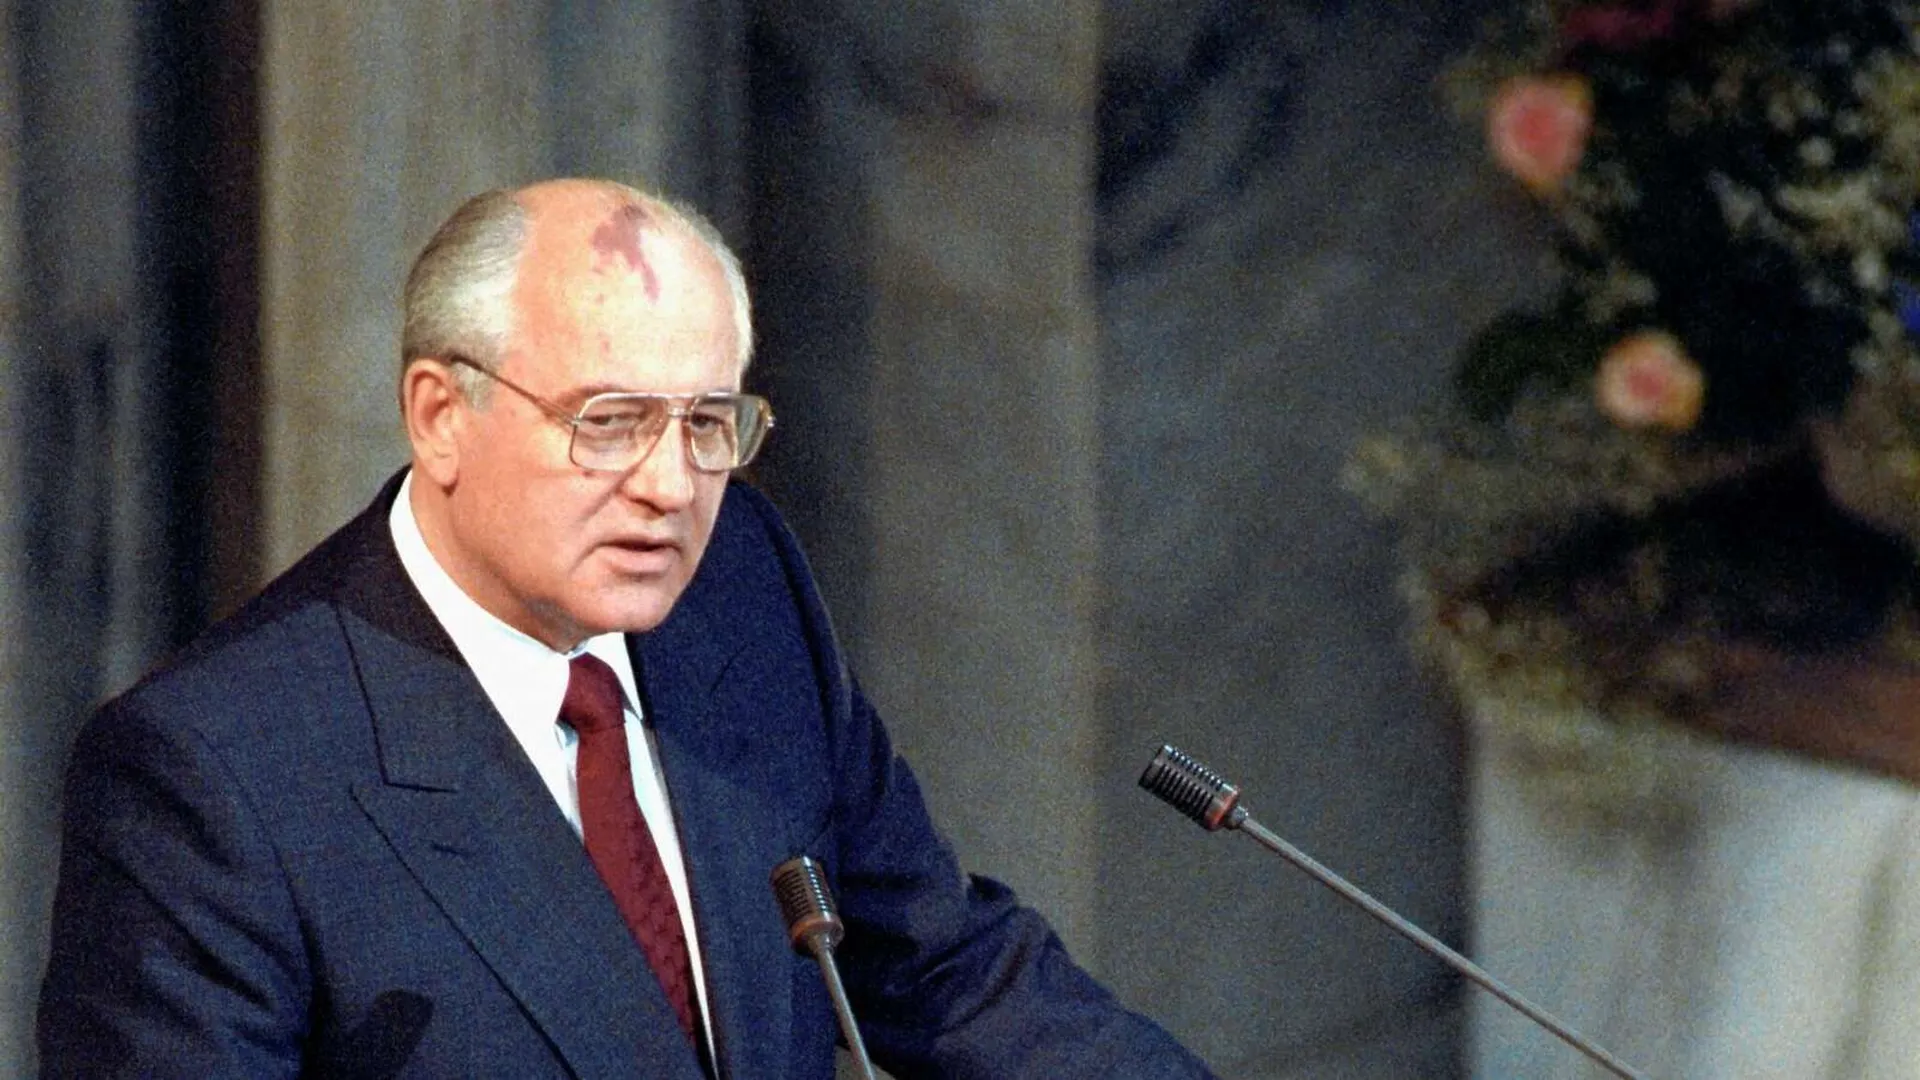 Хороший человек не профессия. Горбачев провел реформы, но допустил развал страны